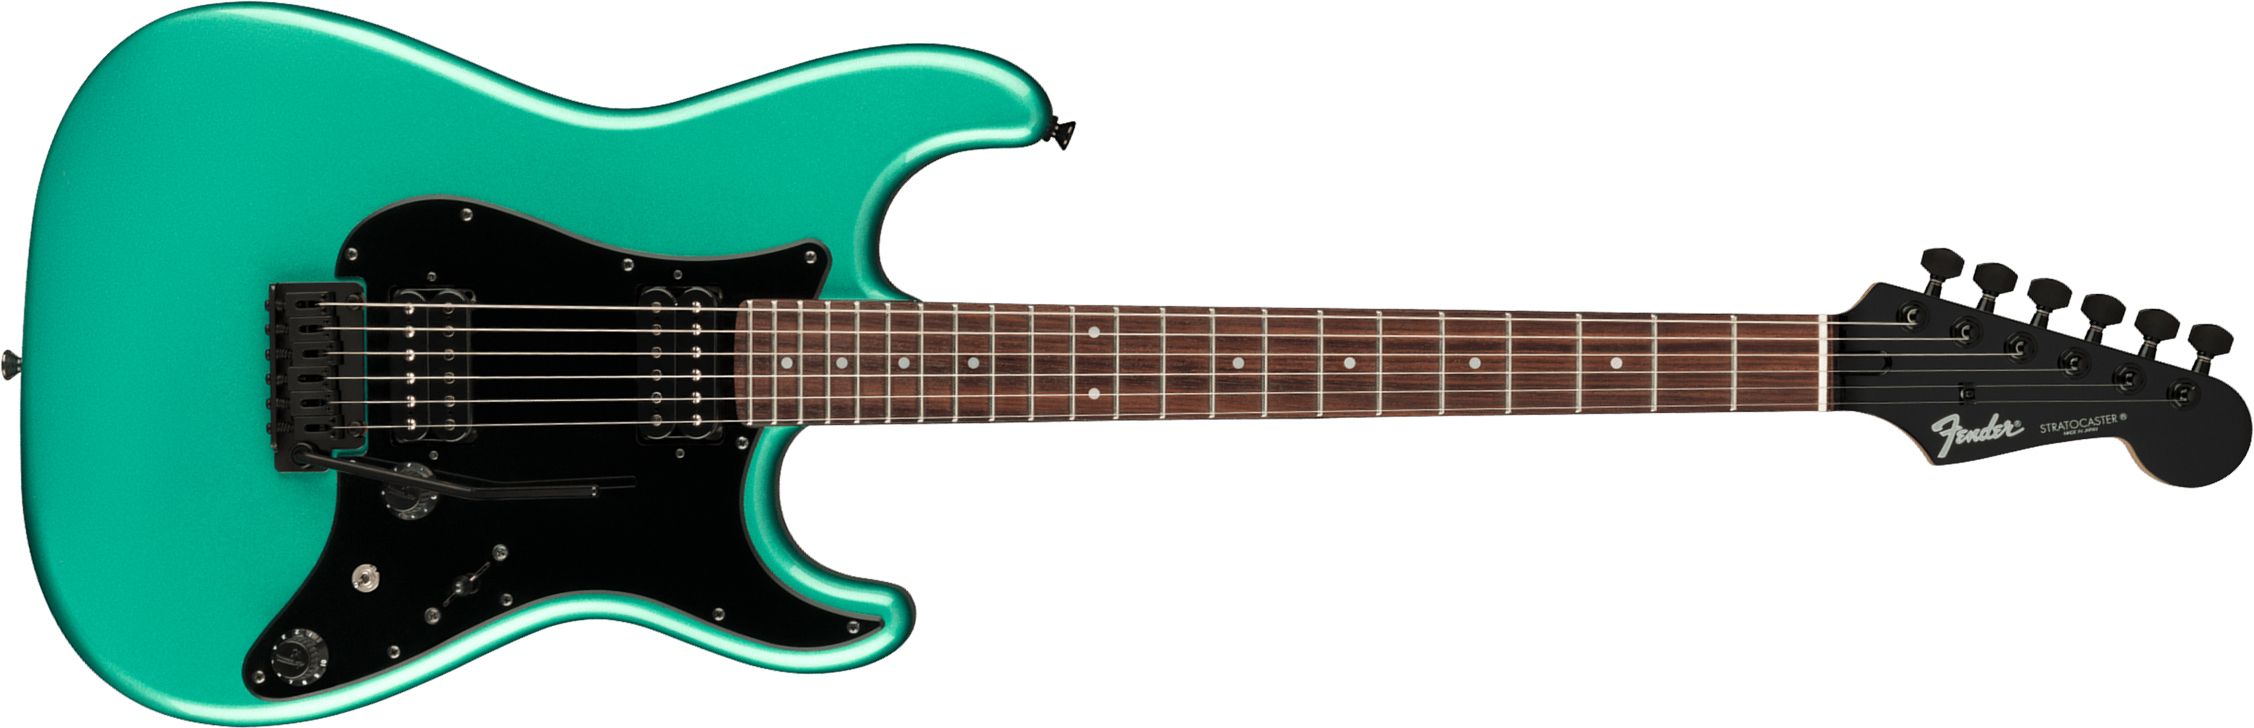 Fender Strat Boxer Hh Jap Trem Rw +housse - Sherwood Green Metallic - Elektrische gitaar in Str-vorm - Main picture